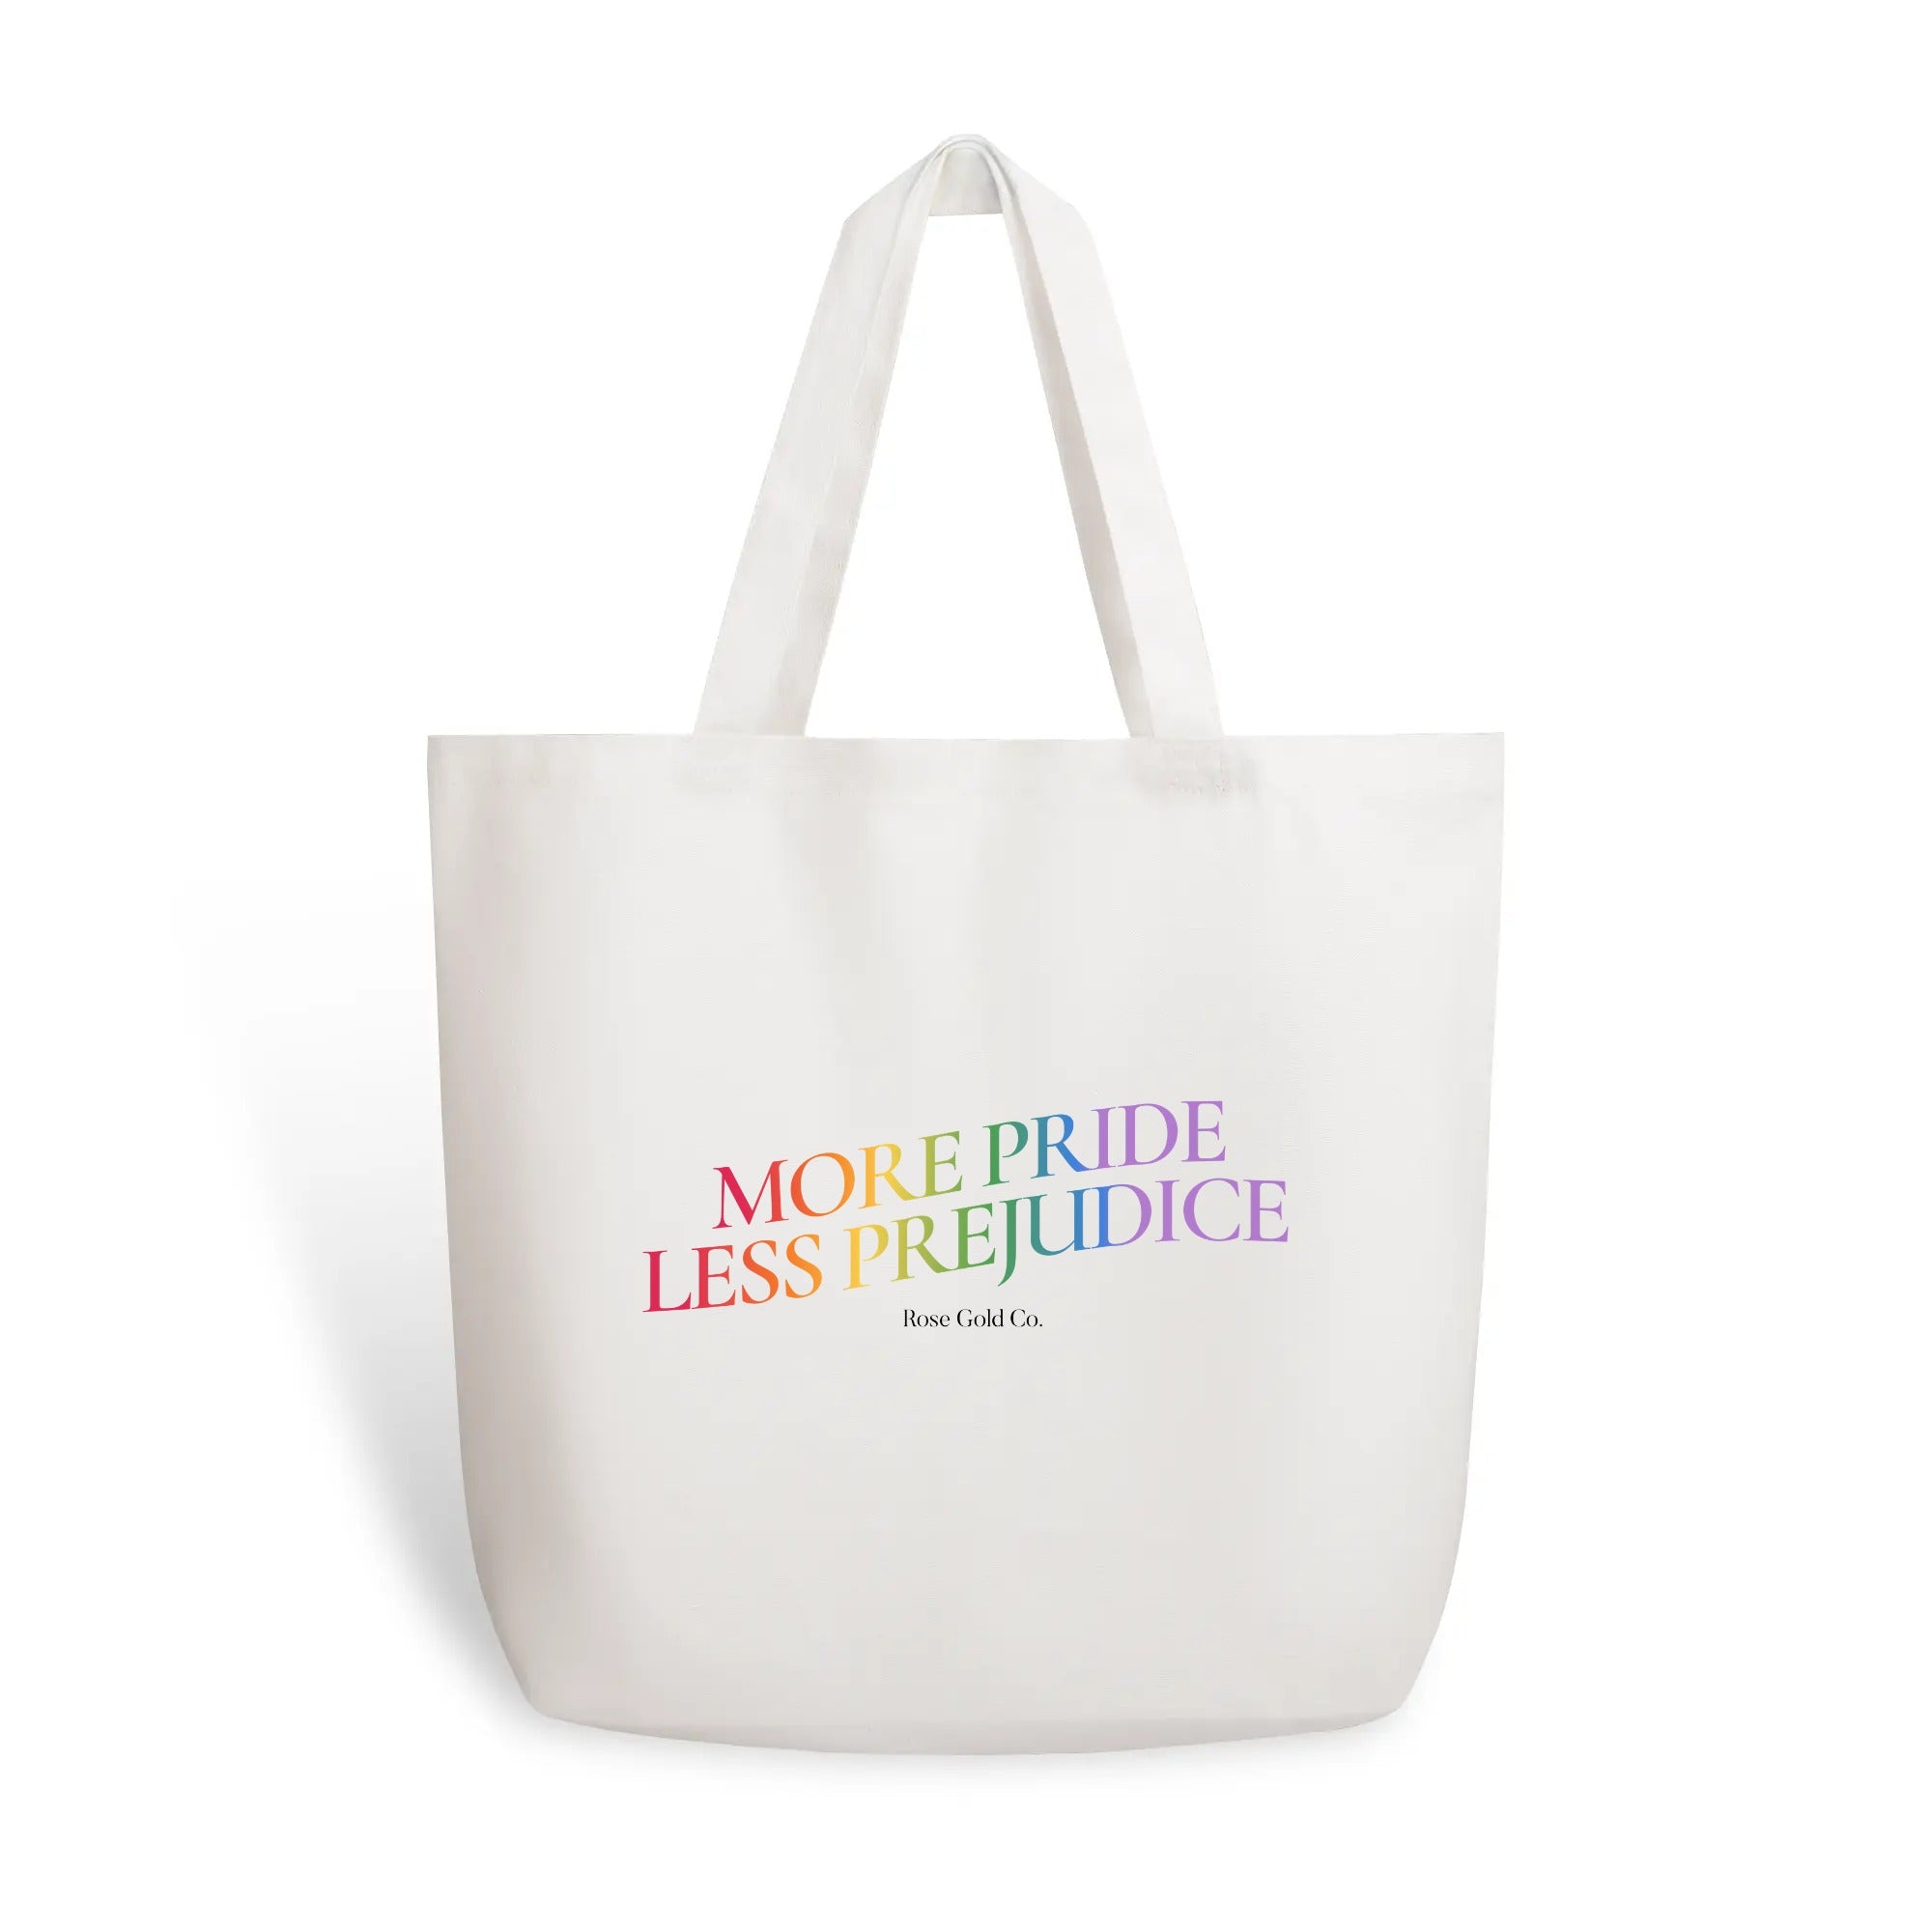 More Pride Less Prejudice Tote Bag (Single-sided Print)